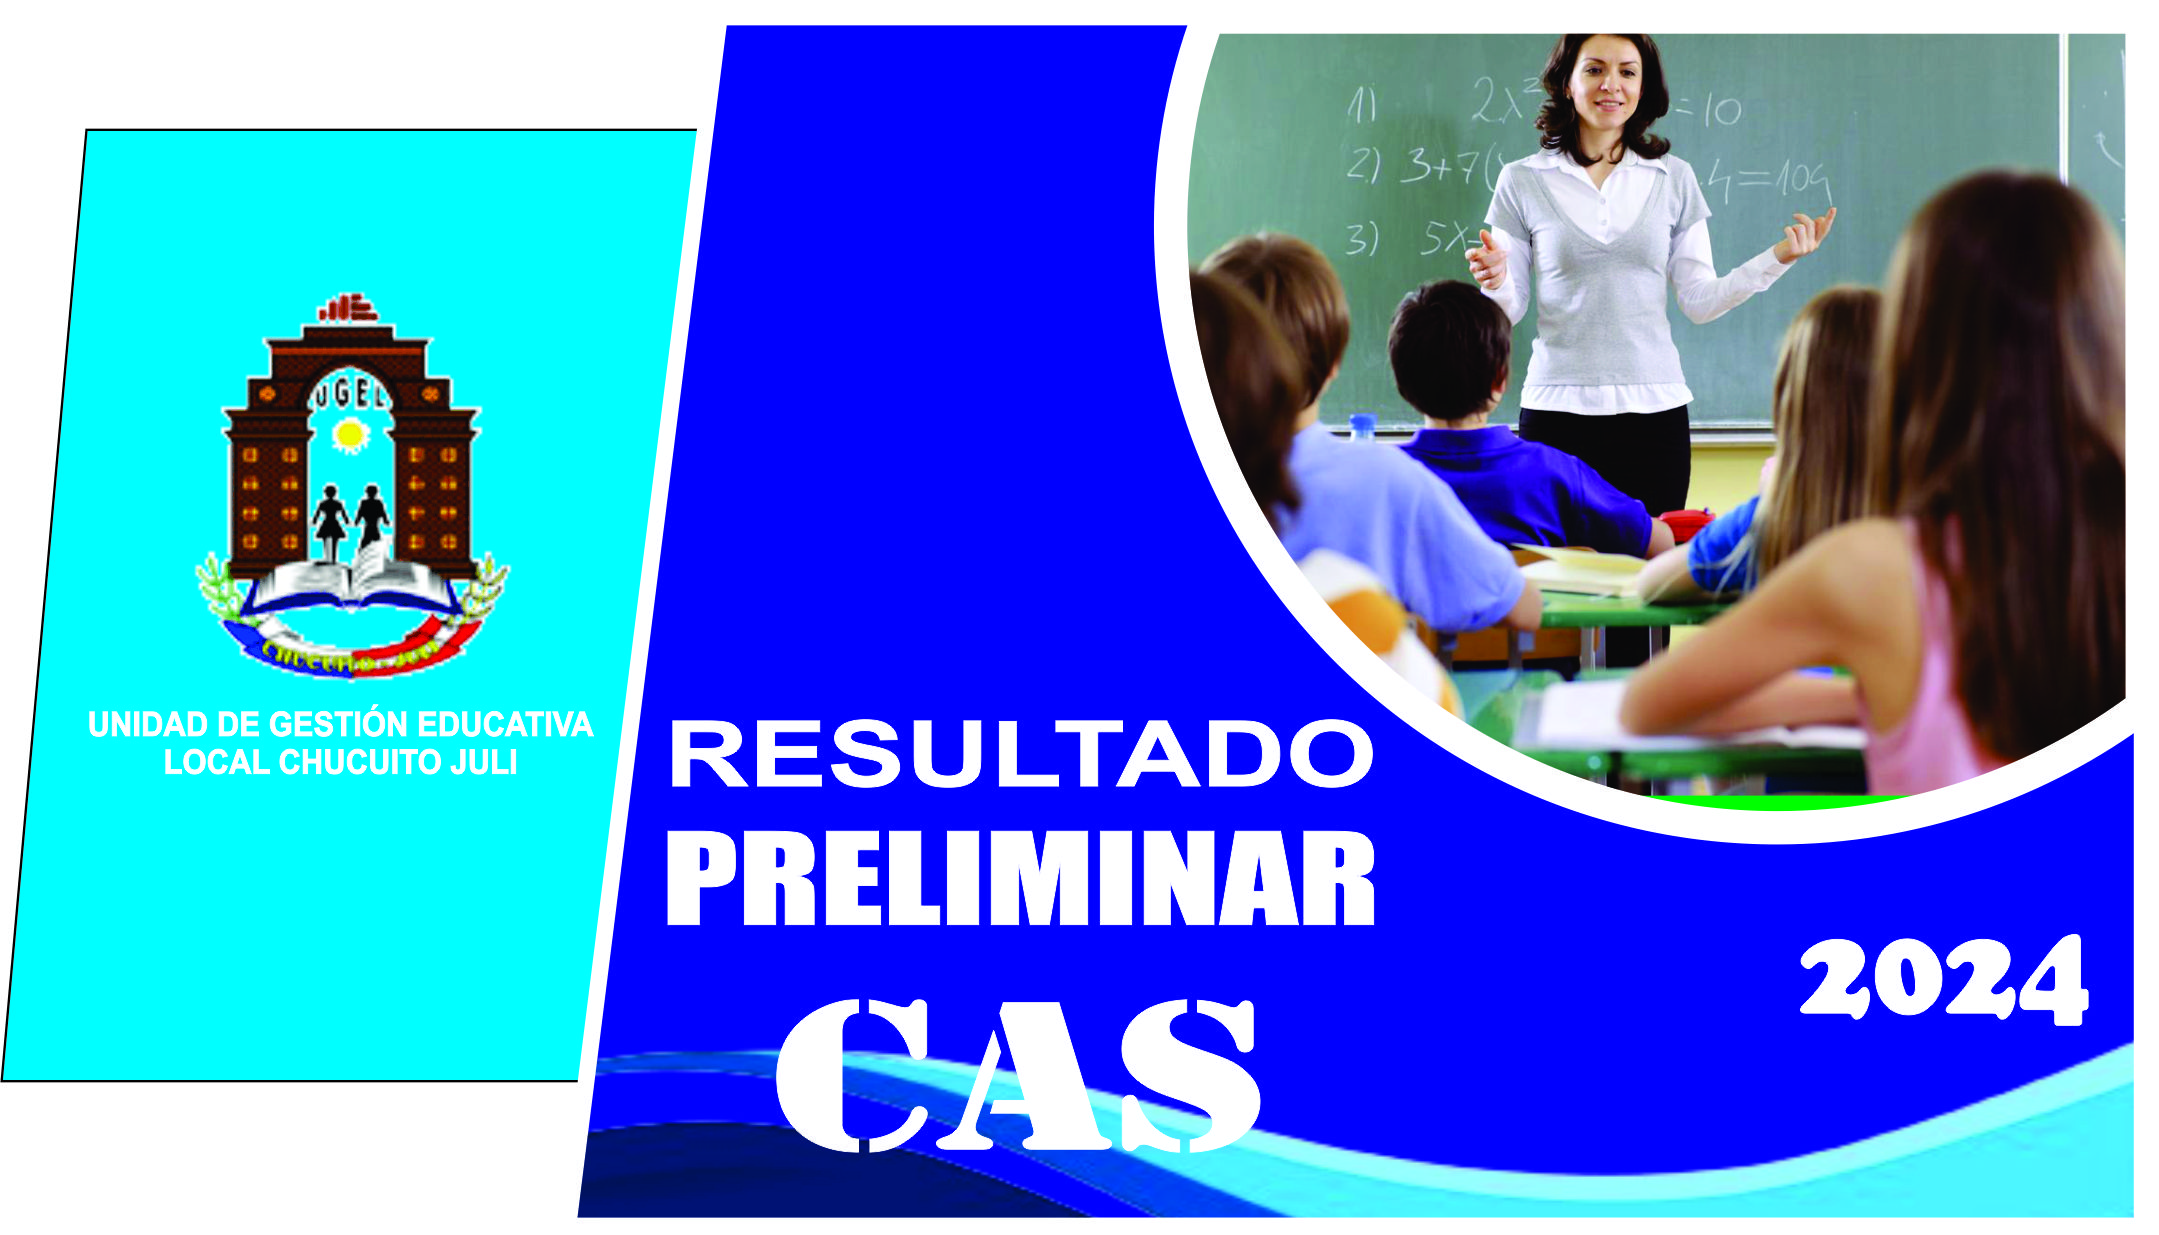 RESULTADOS PRELIMINARES CAS CIST Nº 027